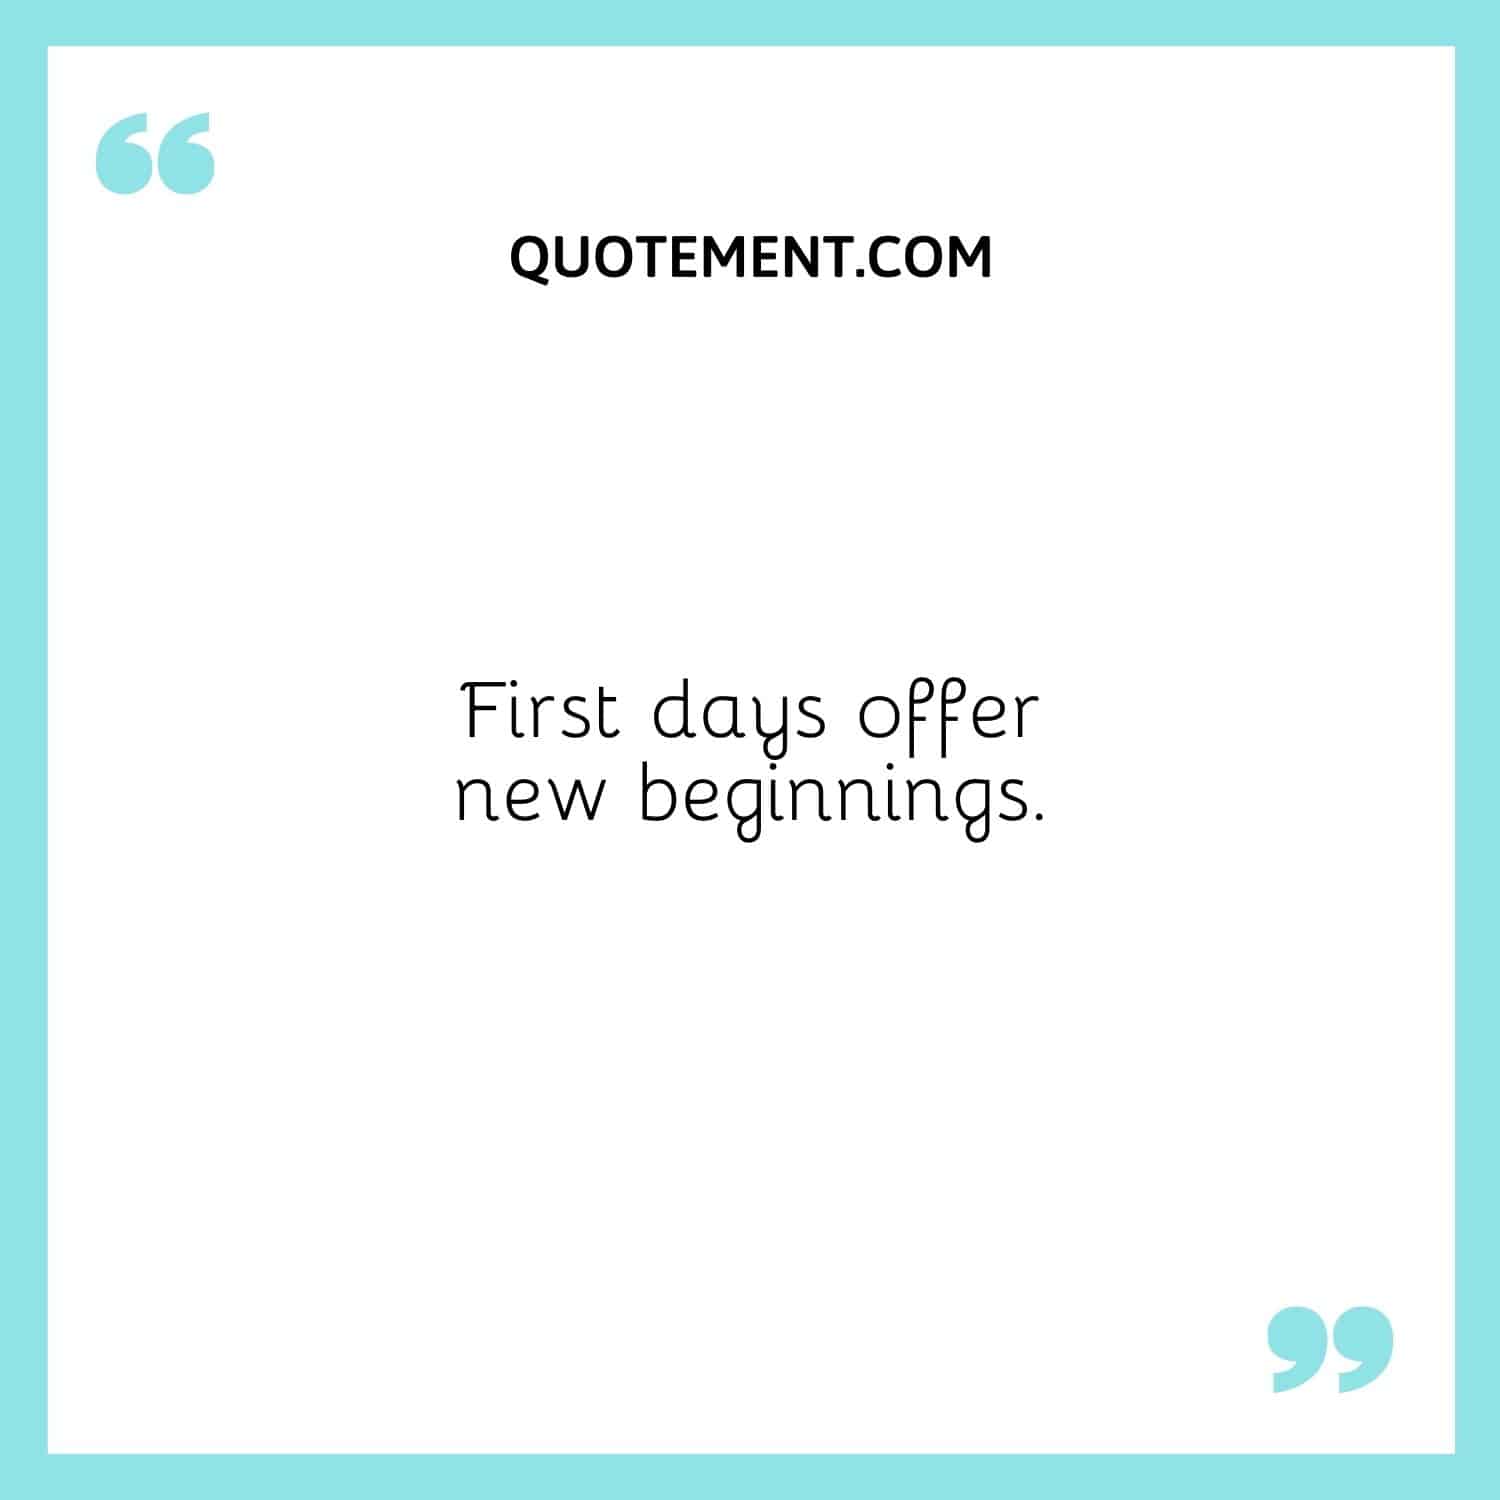 First days offer new beginnings.